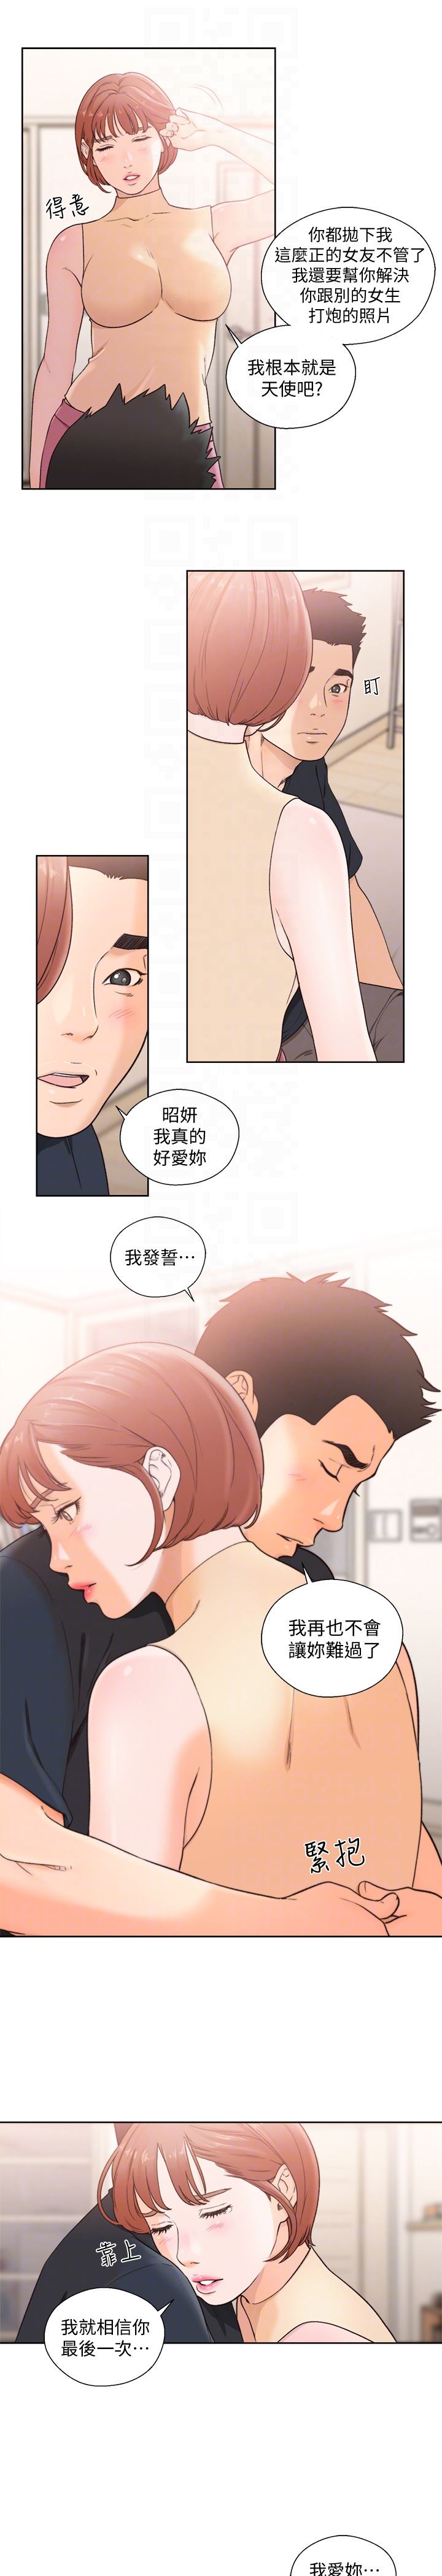 韩国污漫画 解禁:初始的快感 最终话-幸福的方法 19